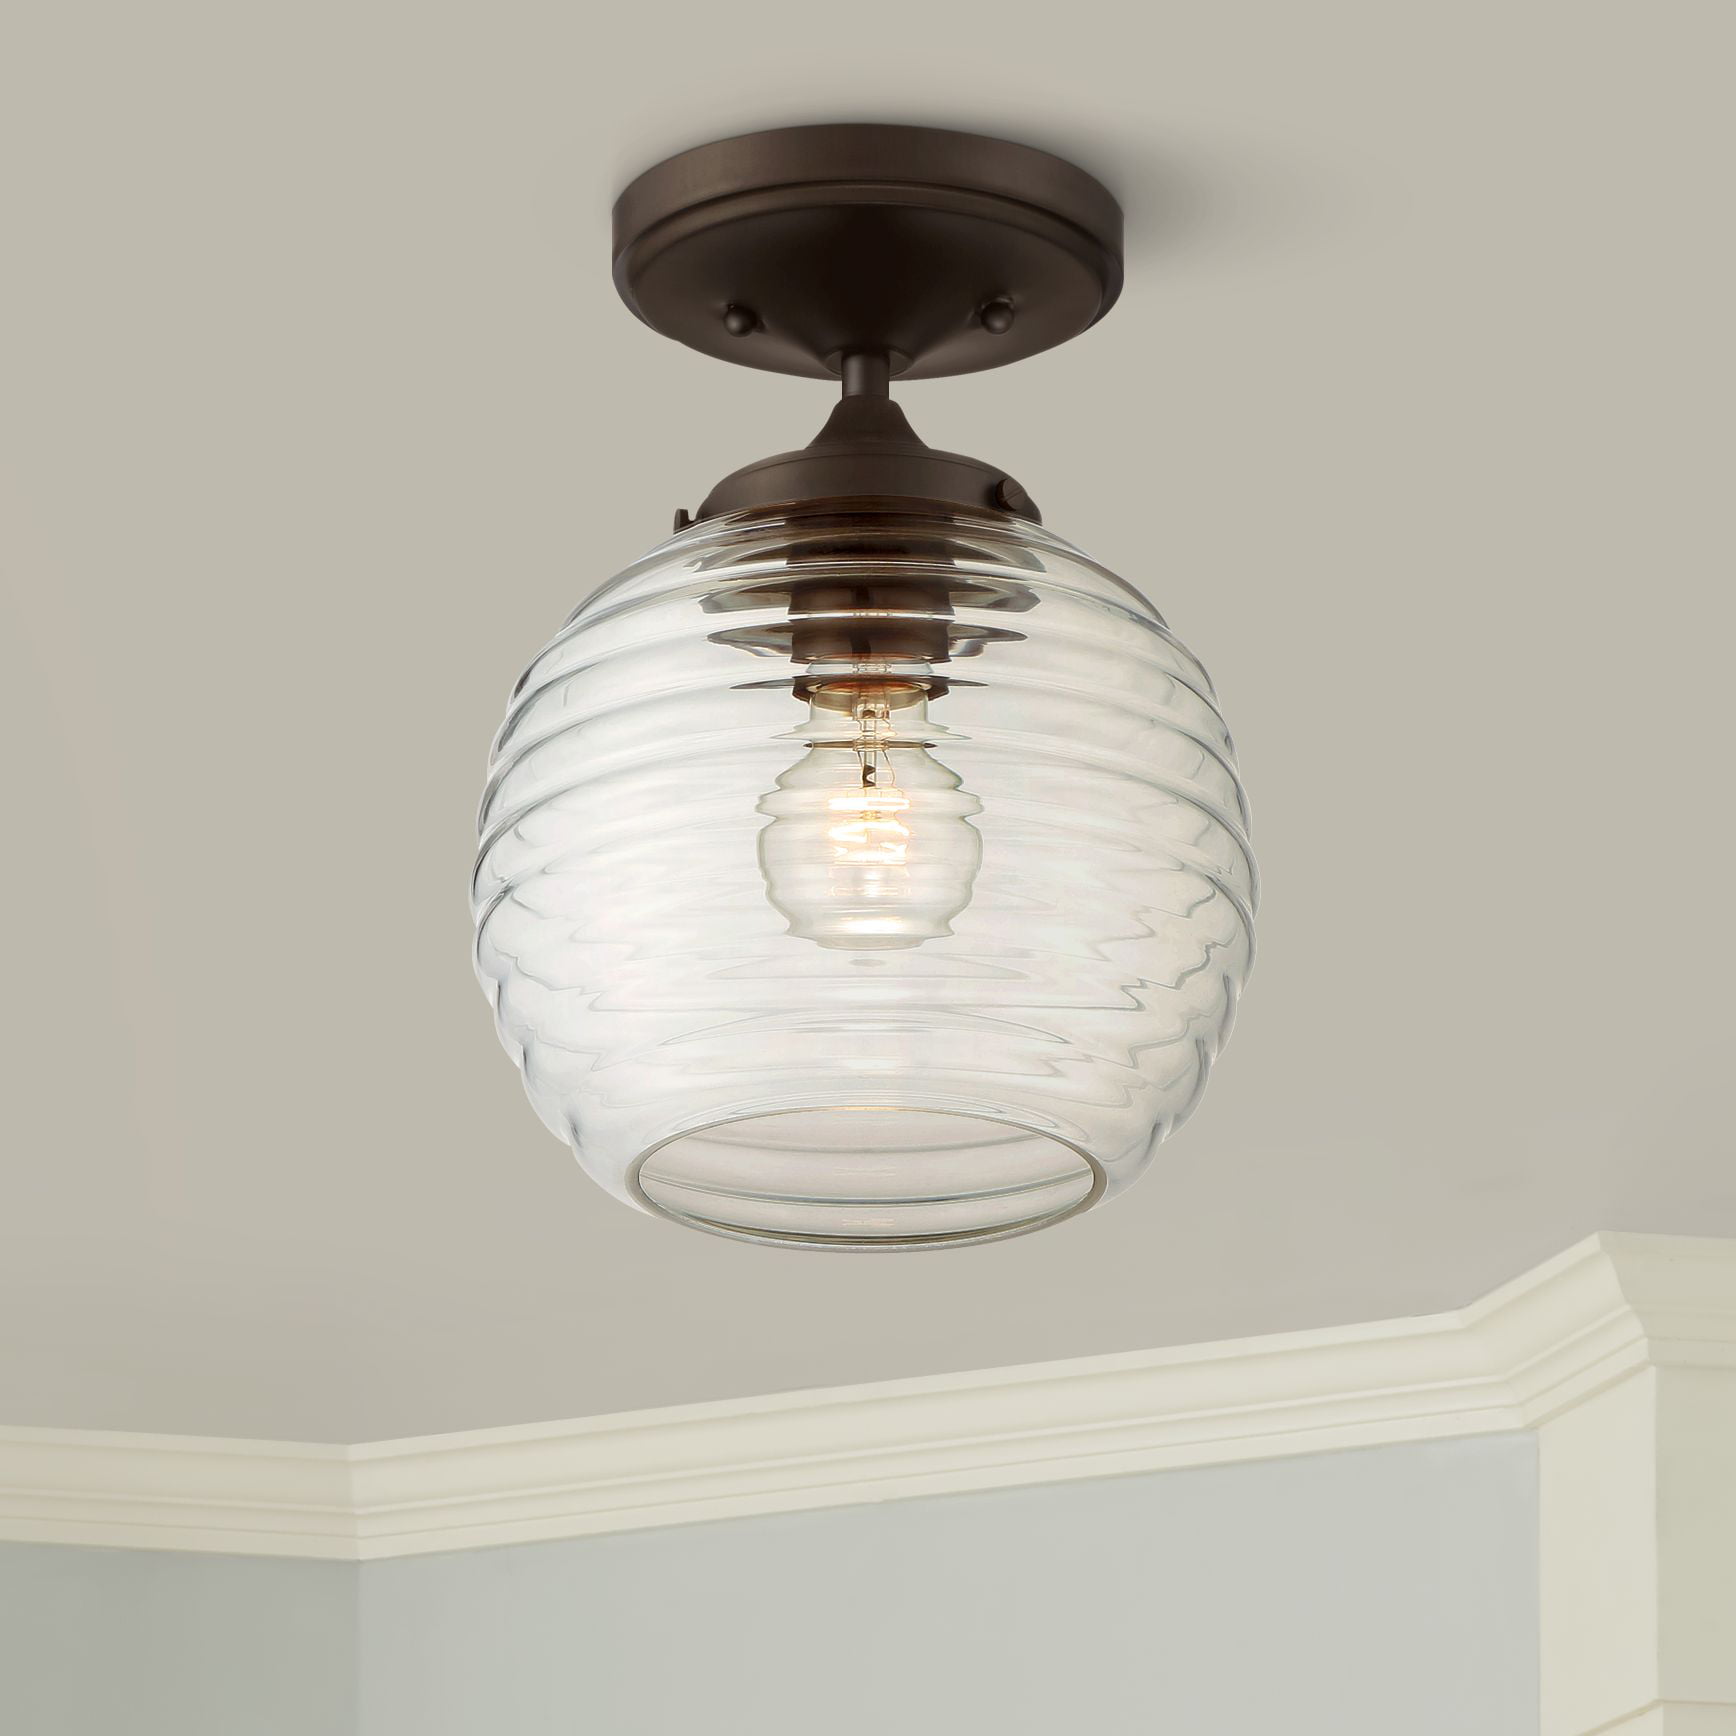 360 Lighting Modern Ceiling Light Semi, Oil Rubbed Bronze Outdoor Jelly Jar Flush Mount Ceiling Light